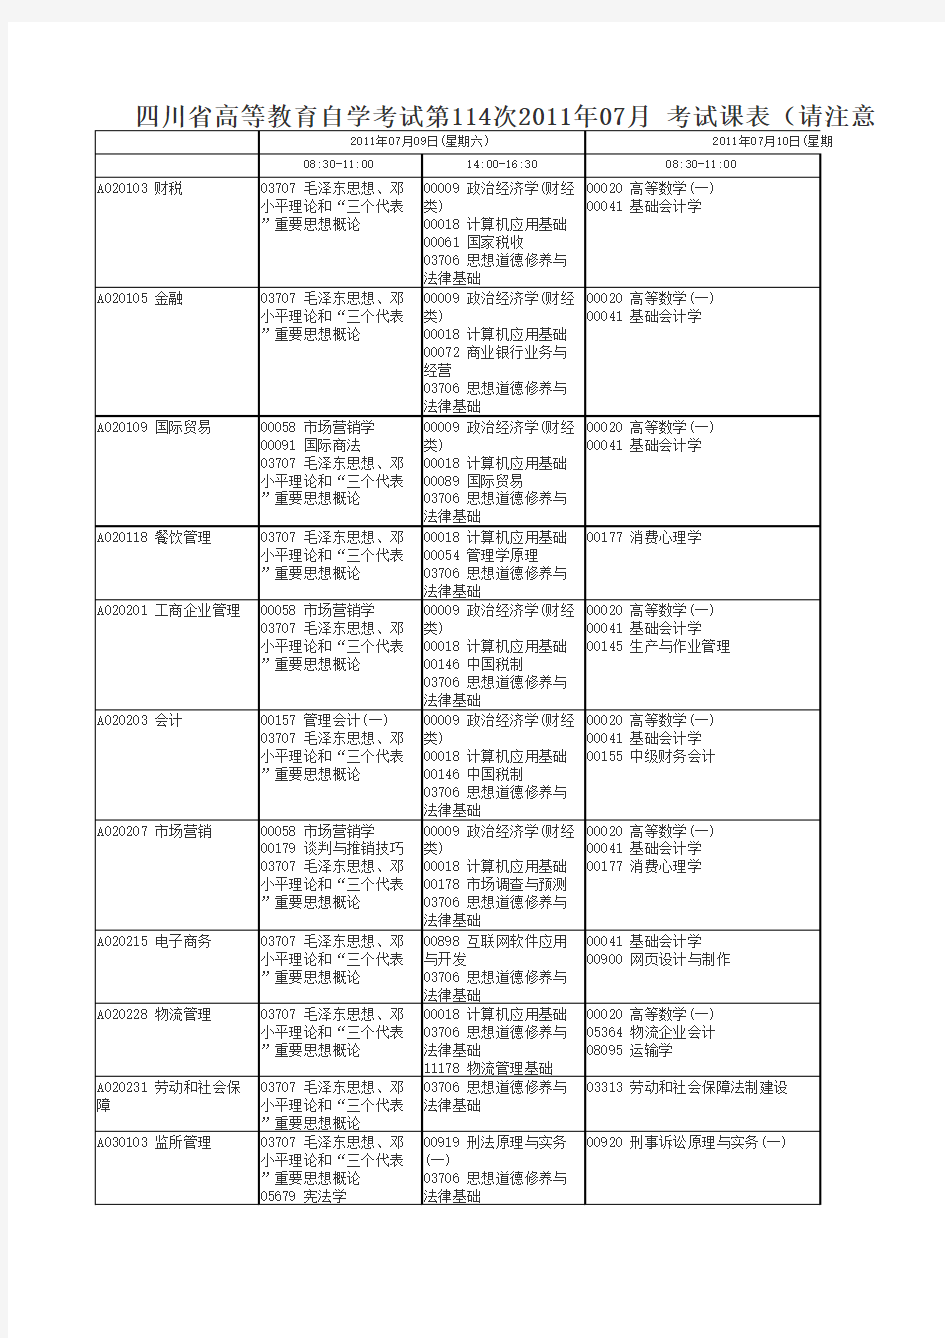 四川省高等教育自学考试第114次2011年07月考试课表(1)